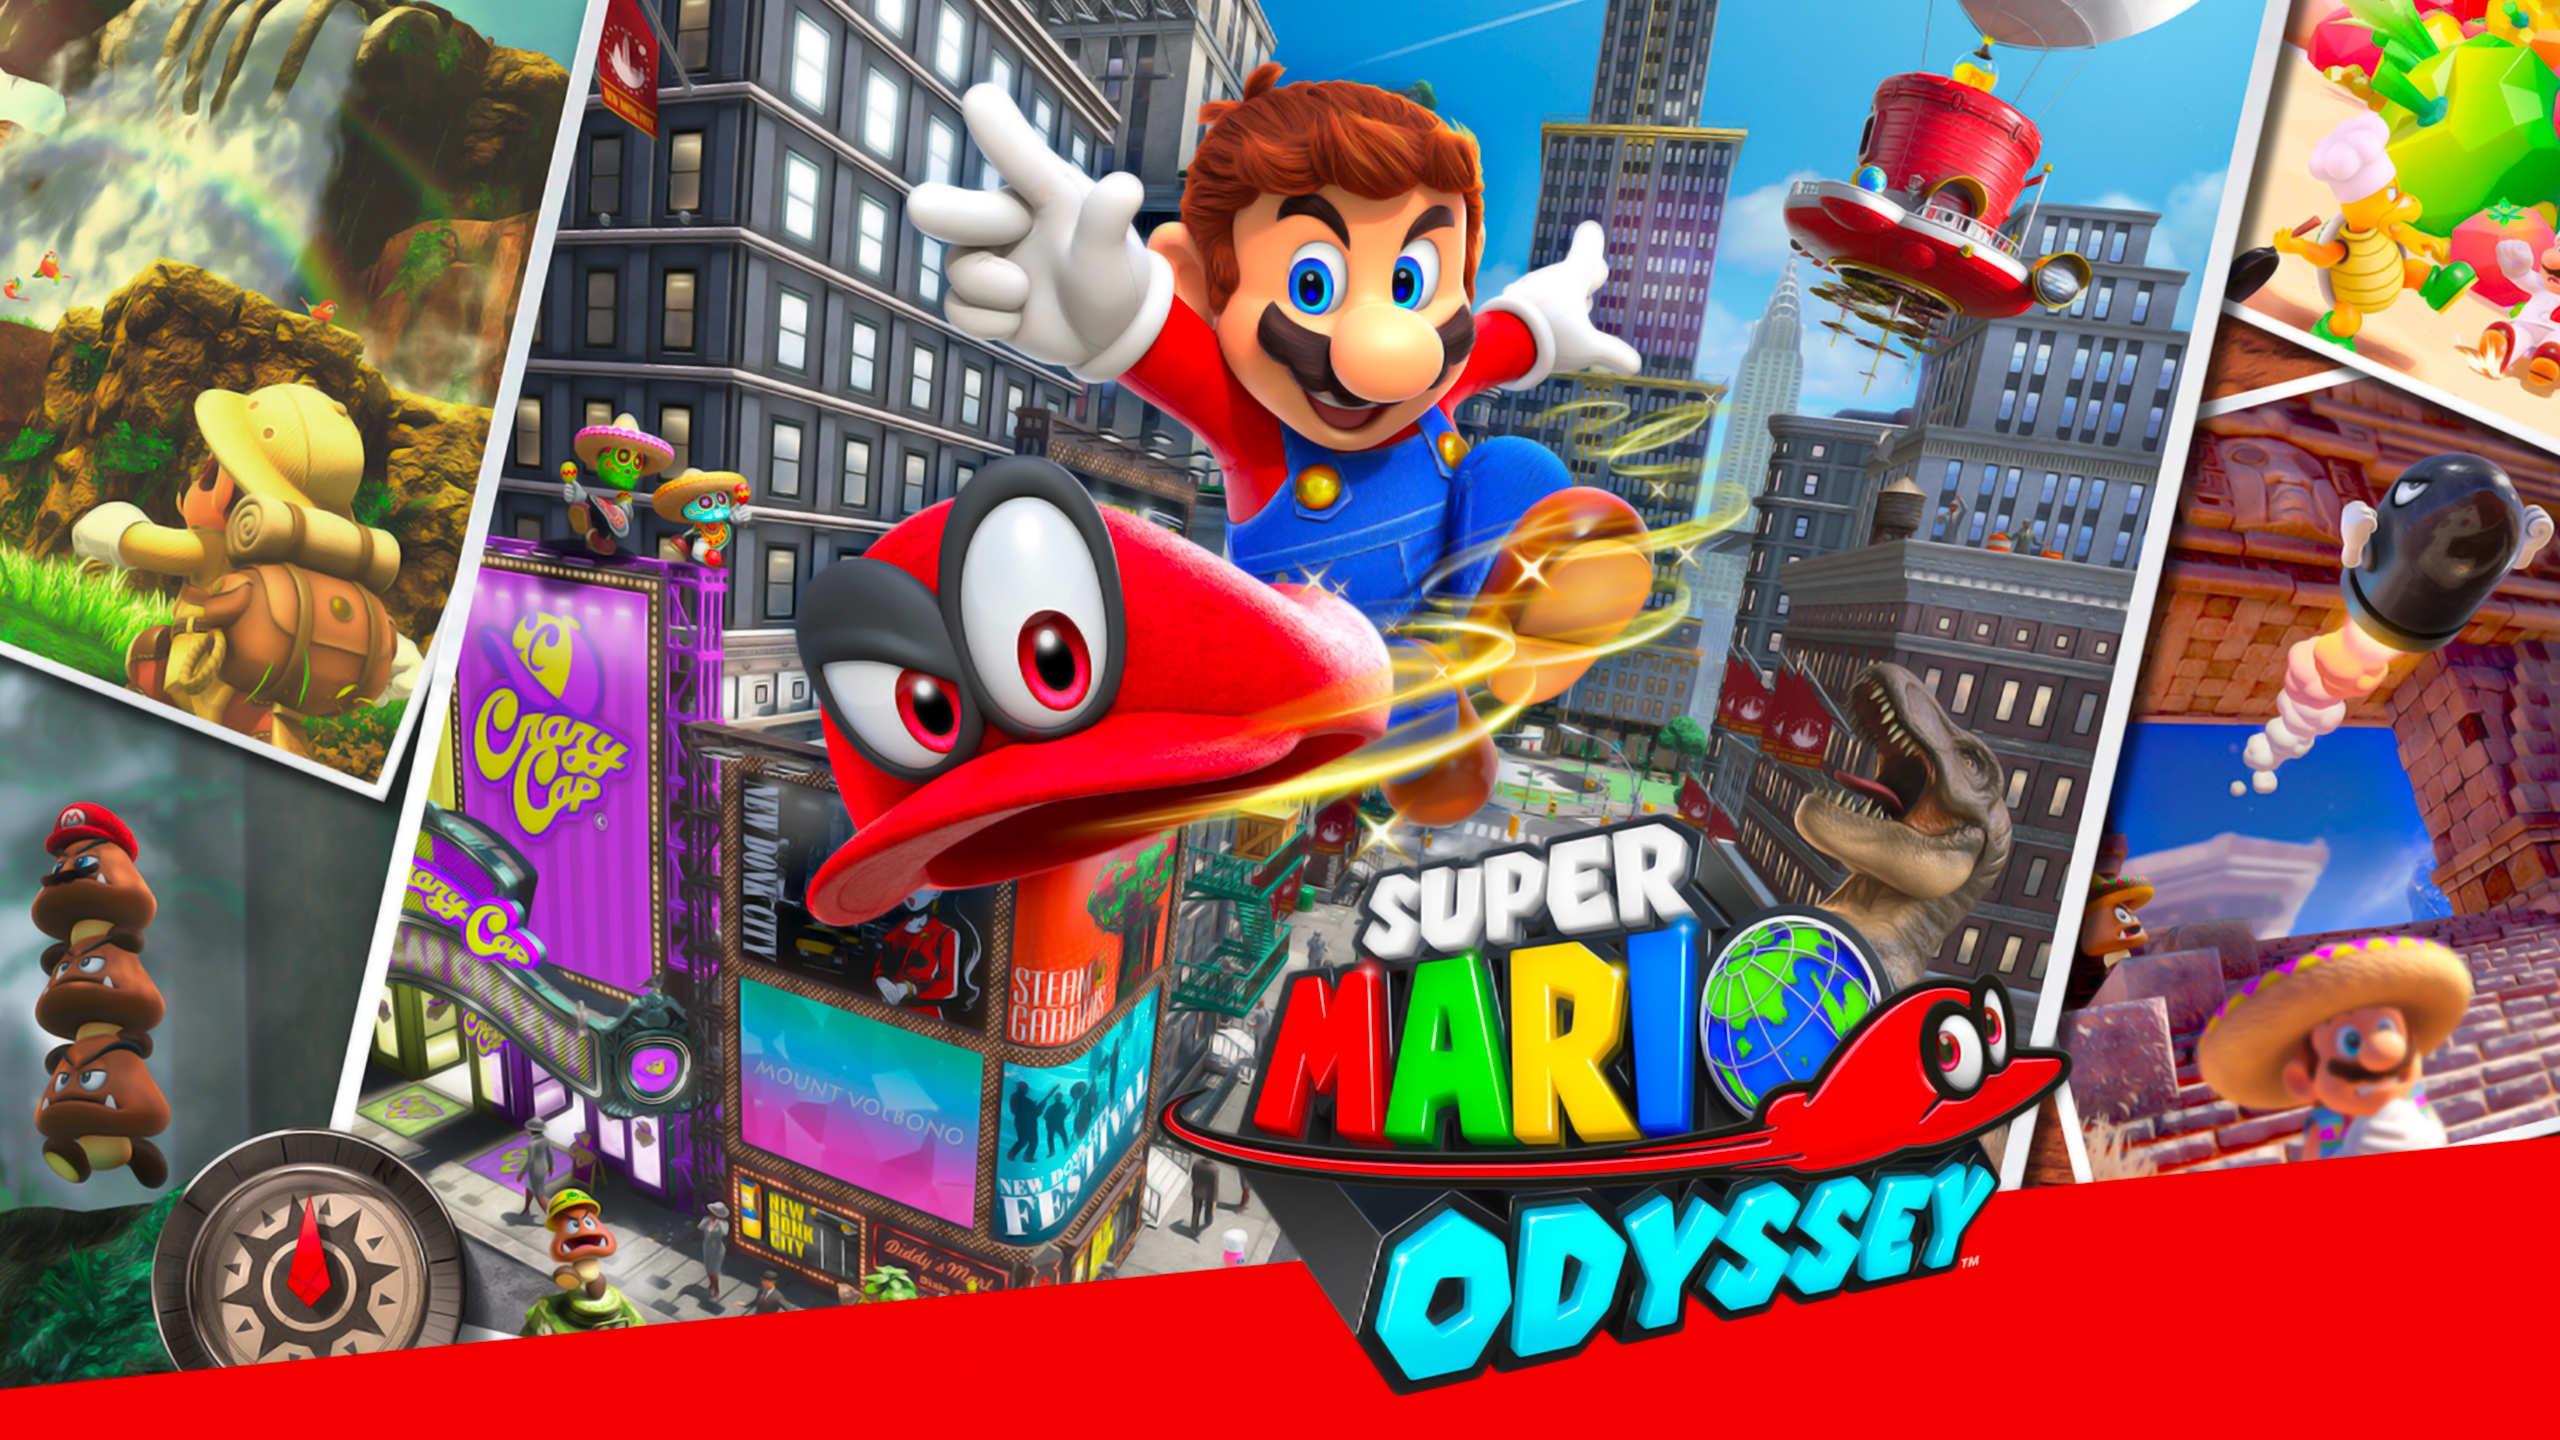 Worten - O jogo Super Mario Odyssey vem aí! E como não